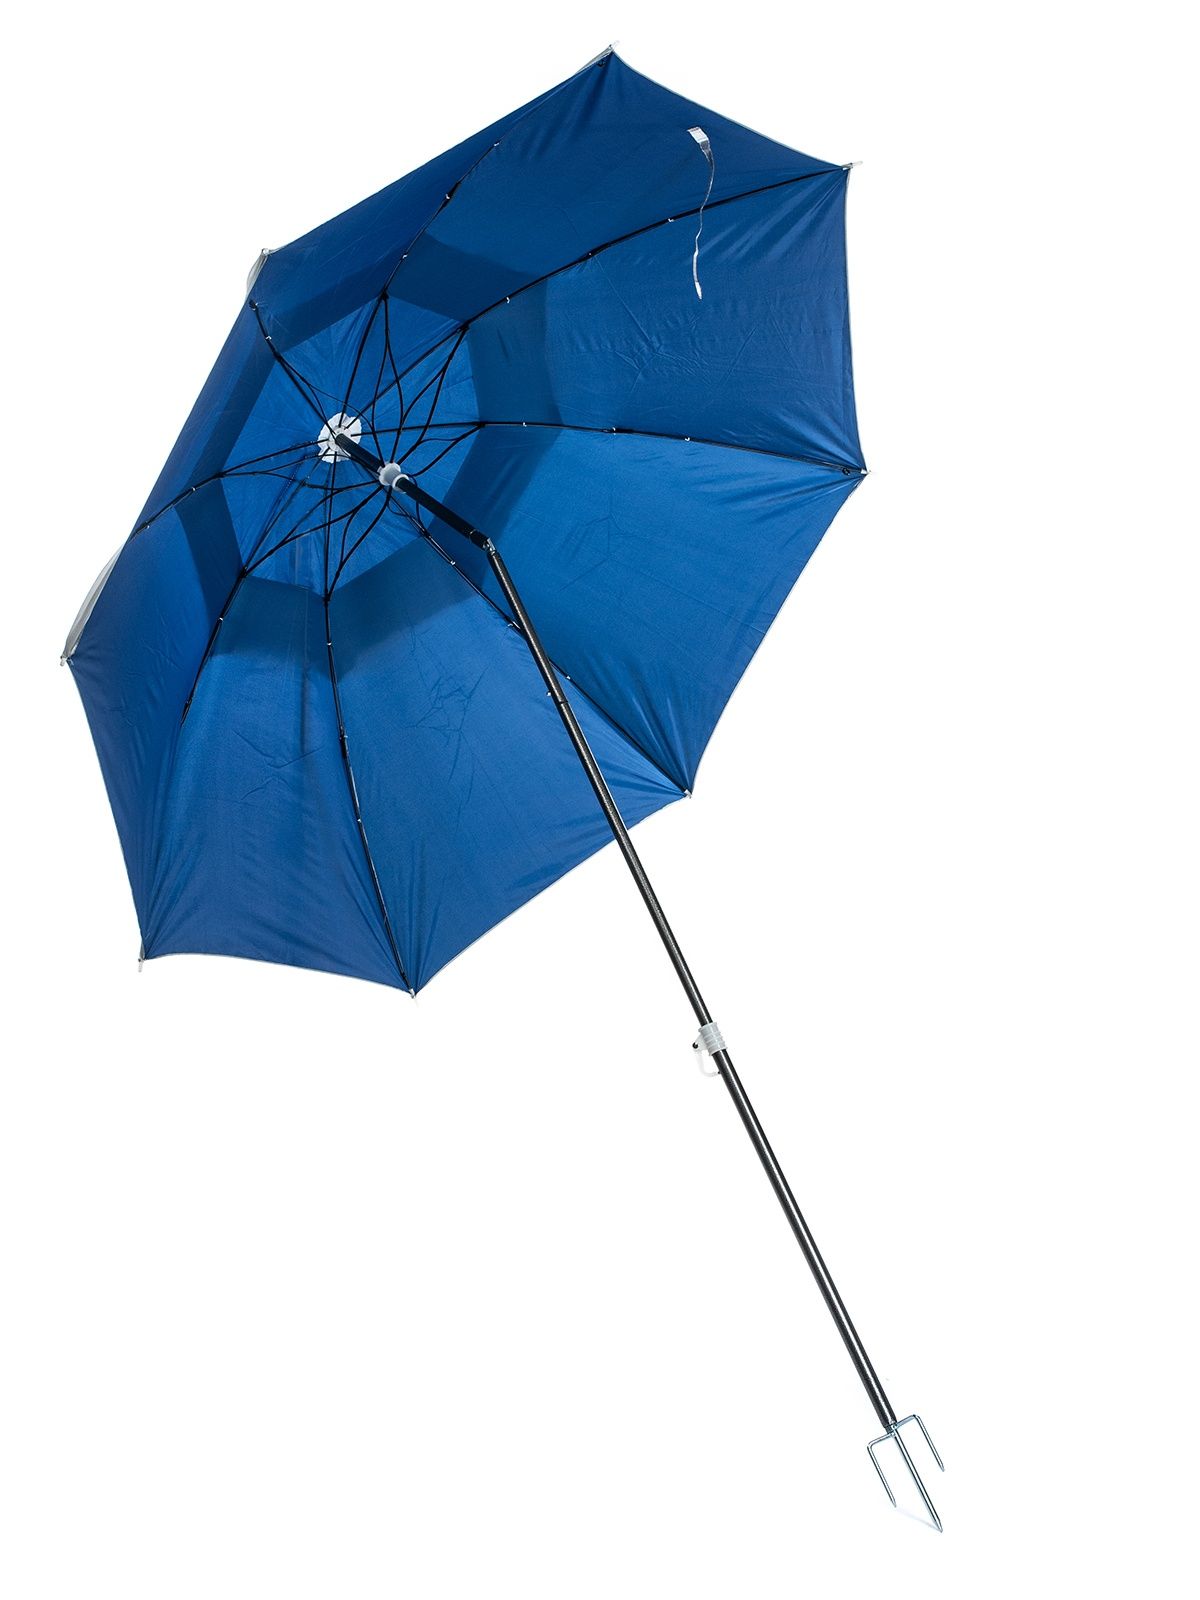 Пляжный зонт "Антиветер" + защита от УФ 2 метра, с наклоном.